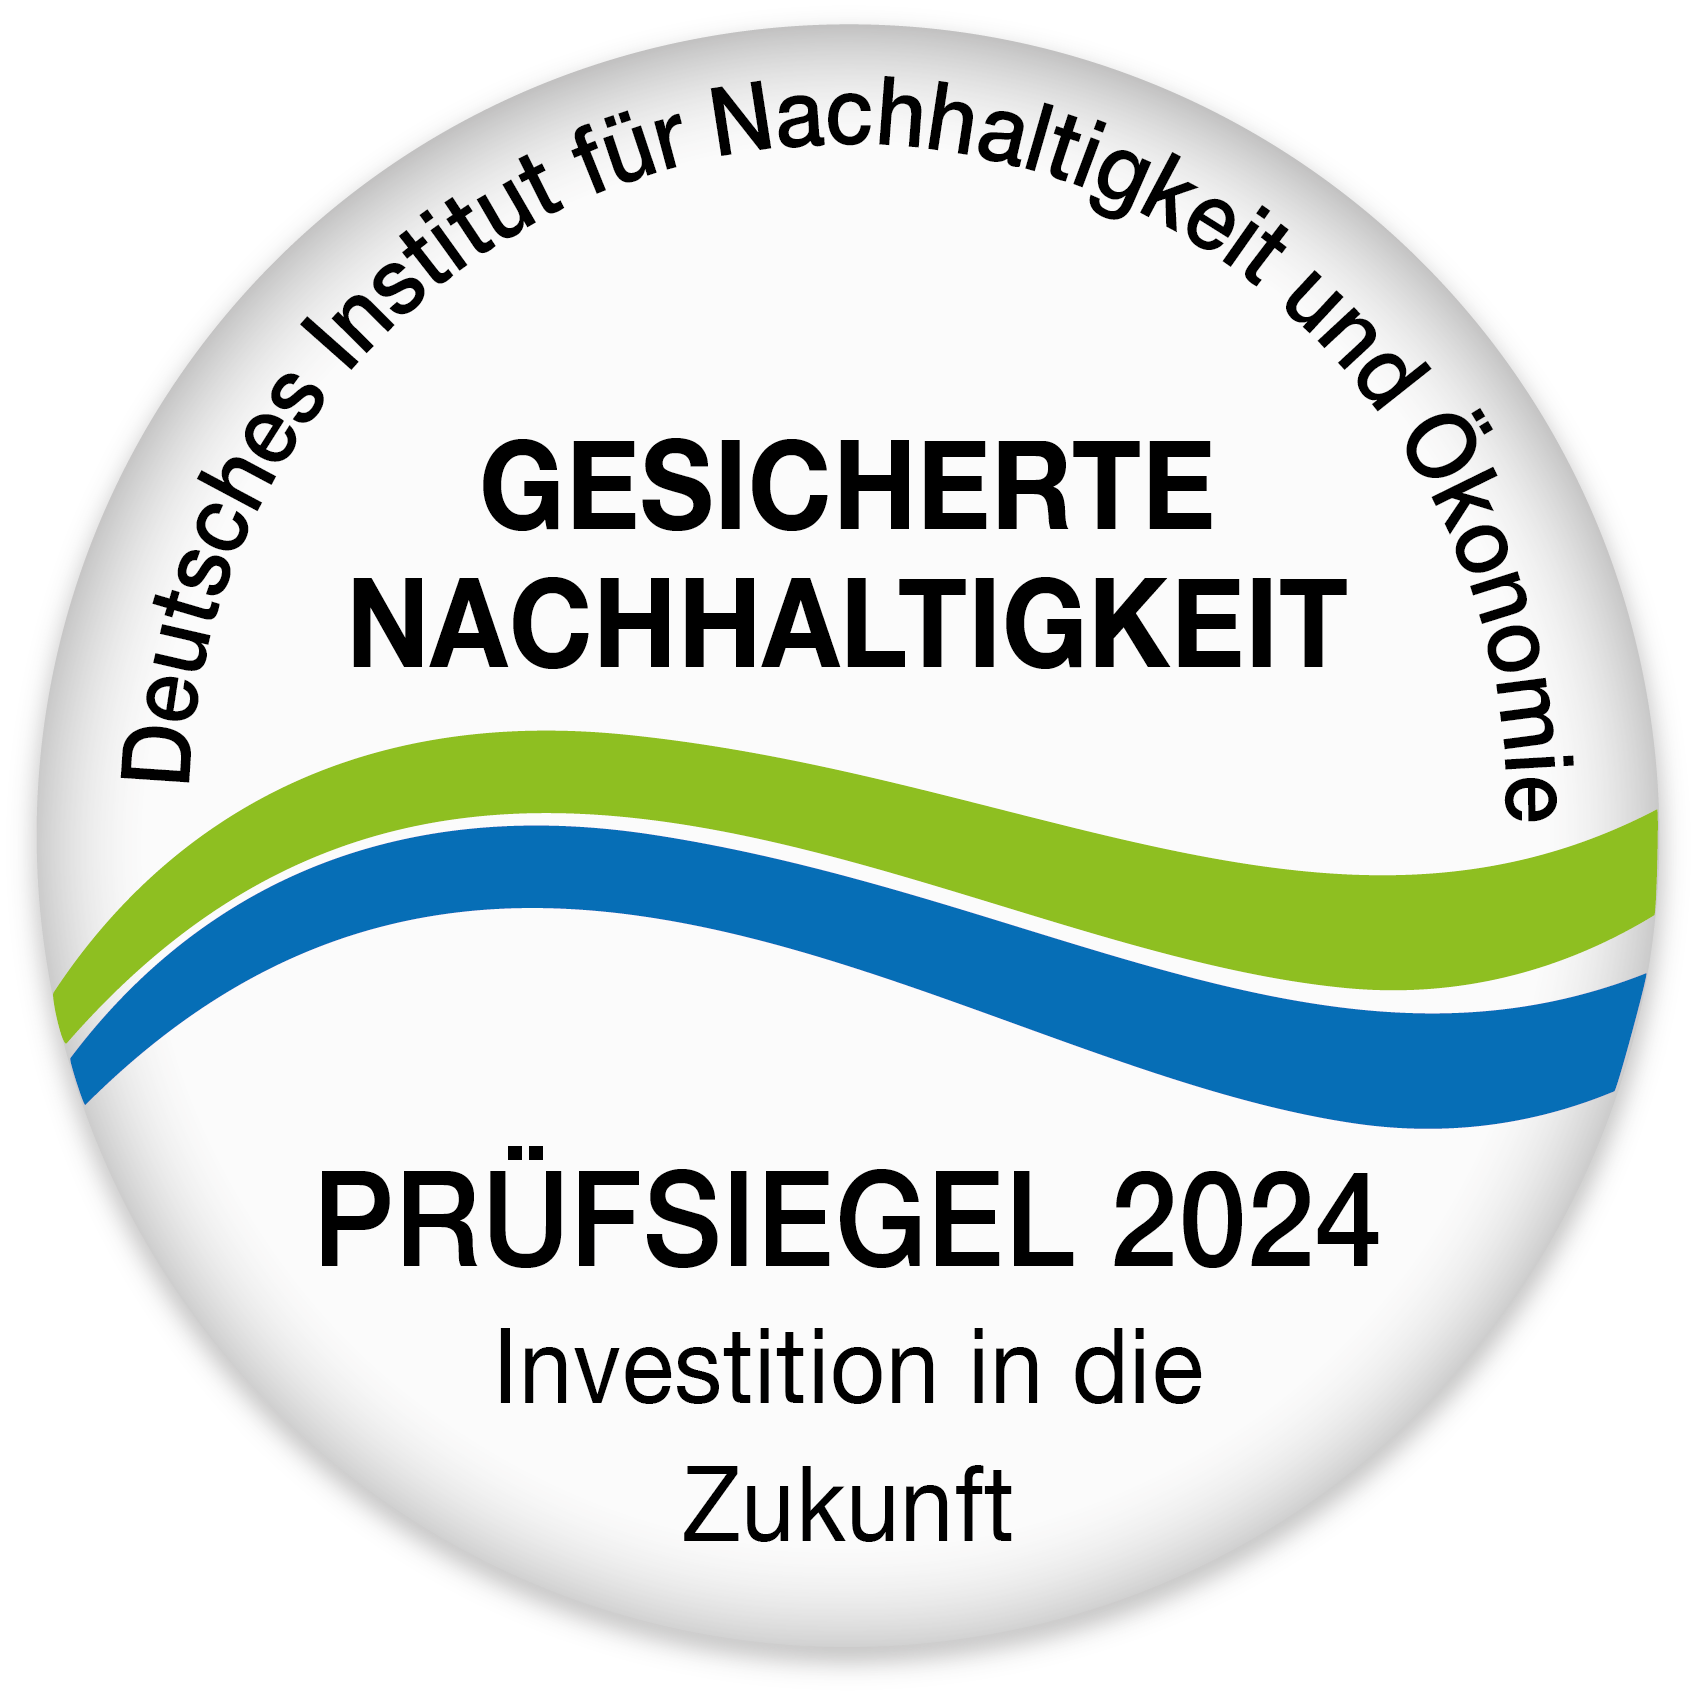 Prüfsiegel 2024 gesicherte Nachhaltigkeit